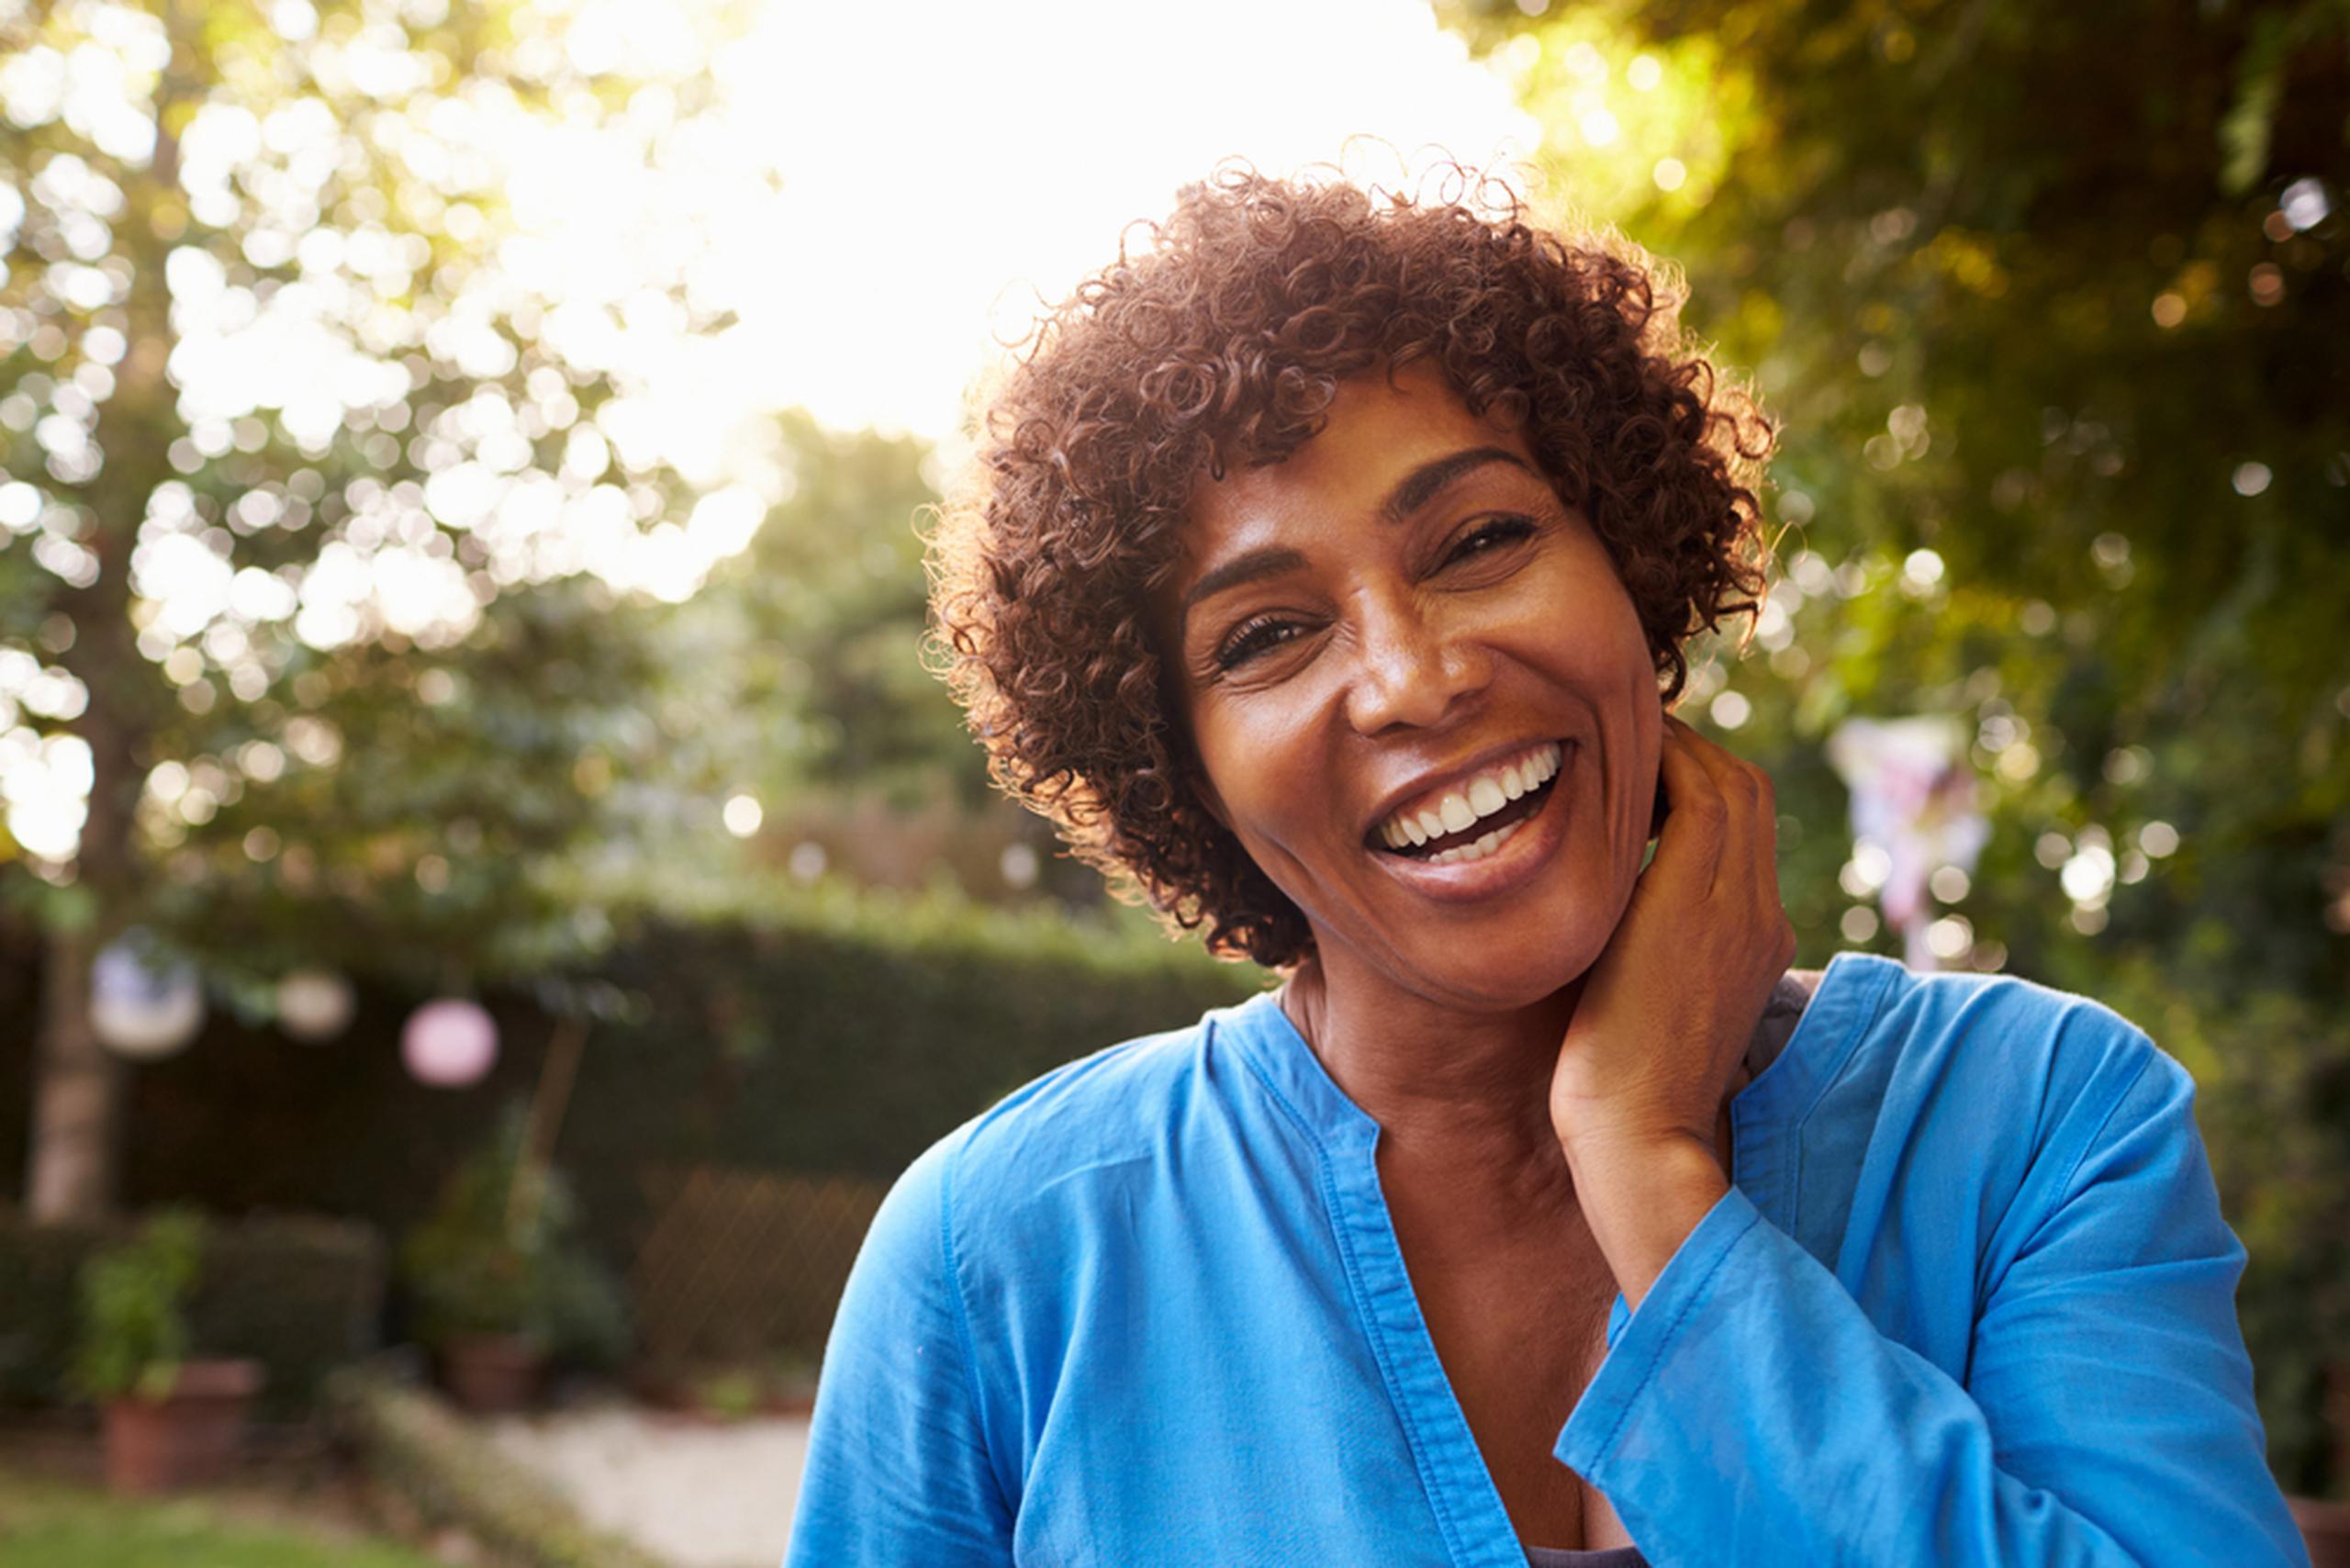 En la etapa de la menopausia, si la mujer decide adoptar hábitos saludables y utilizar reemplazo hormonal, puede mejorar su calidad de vida y prevenir futuras complicaciones.